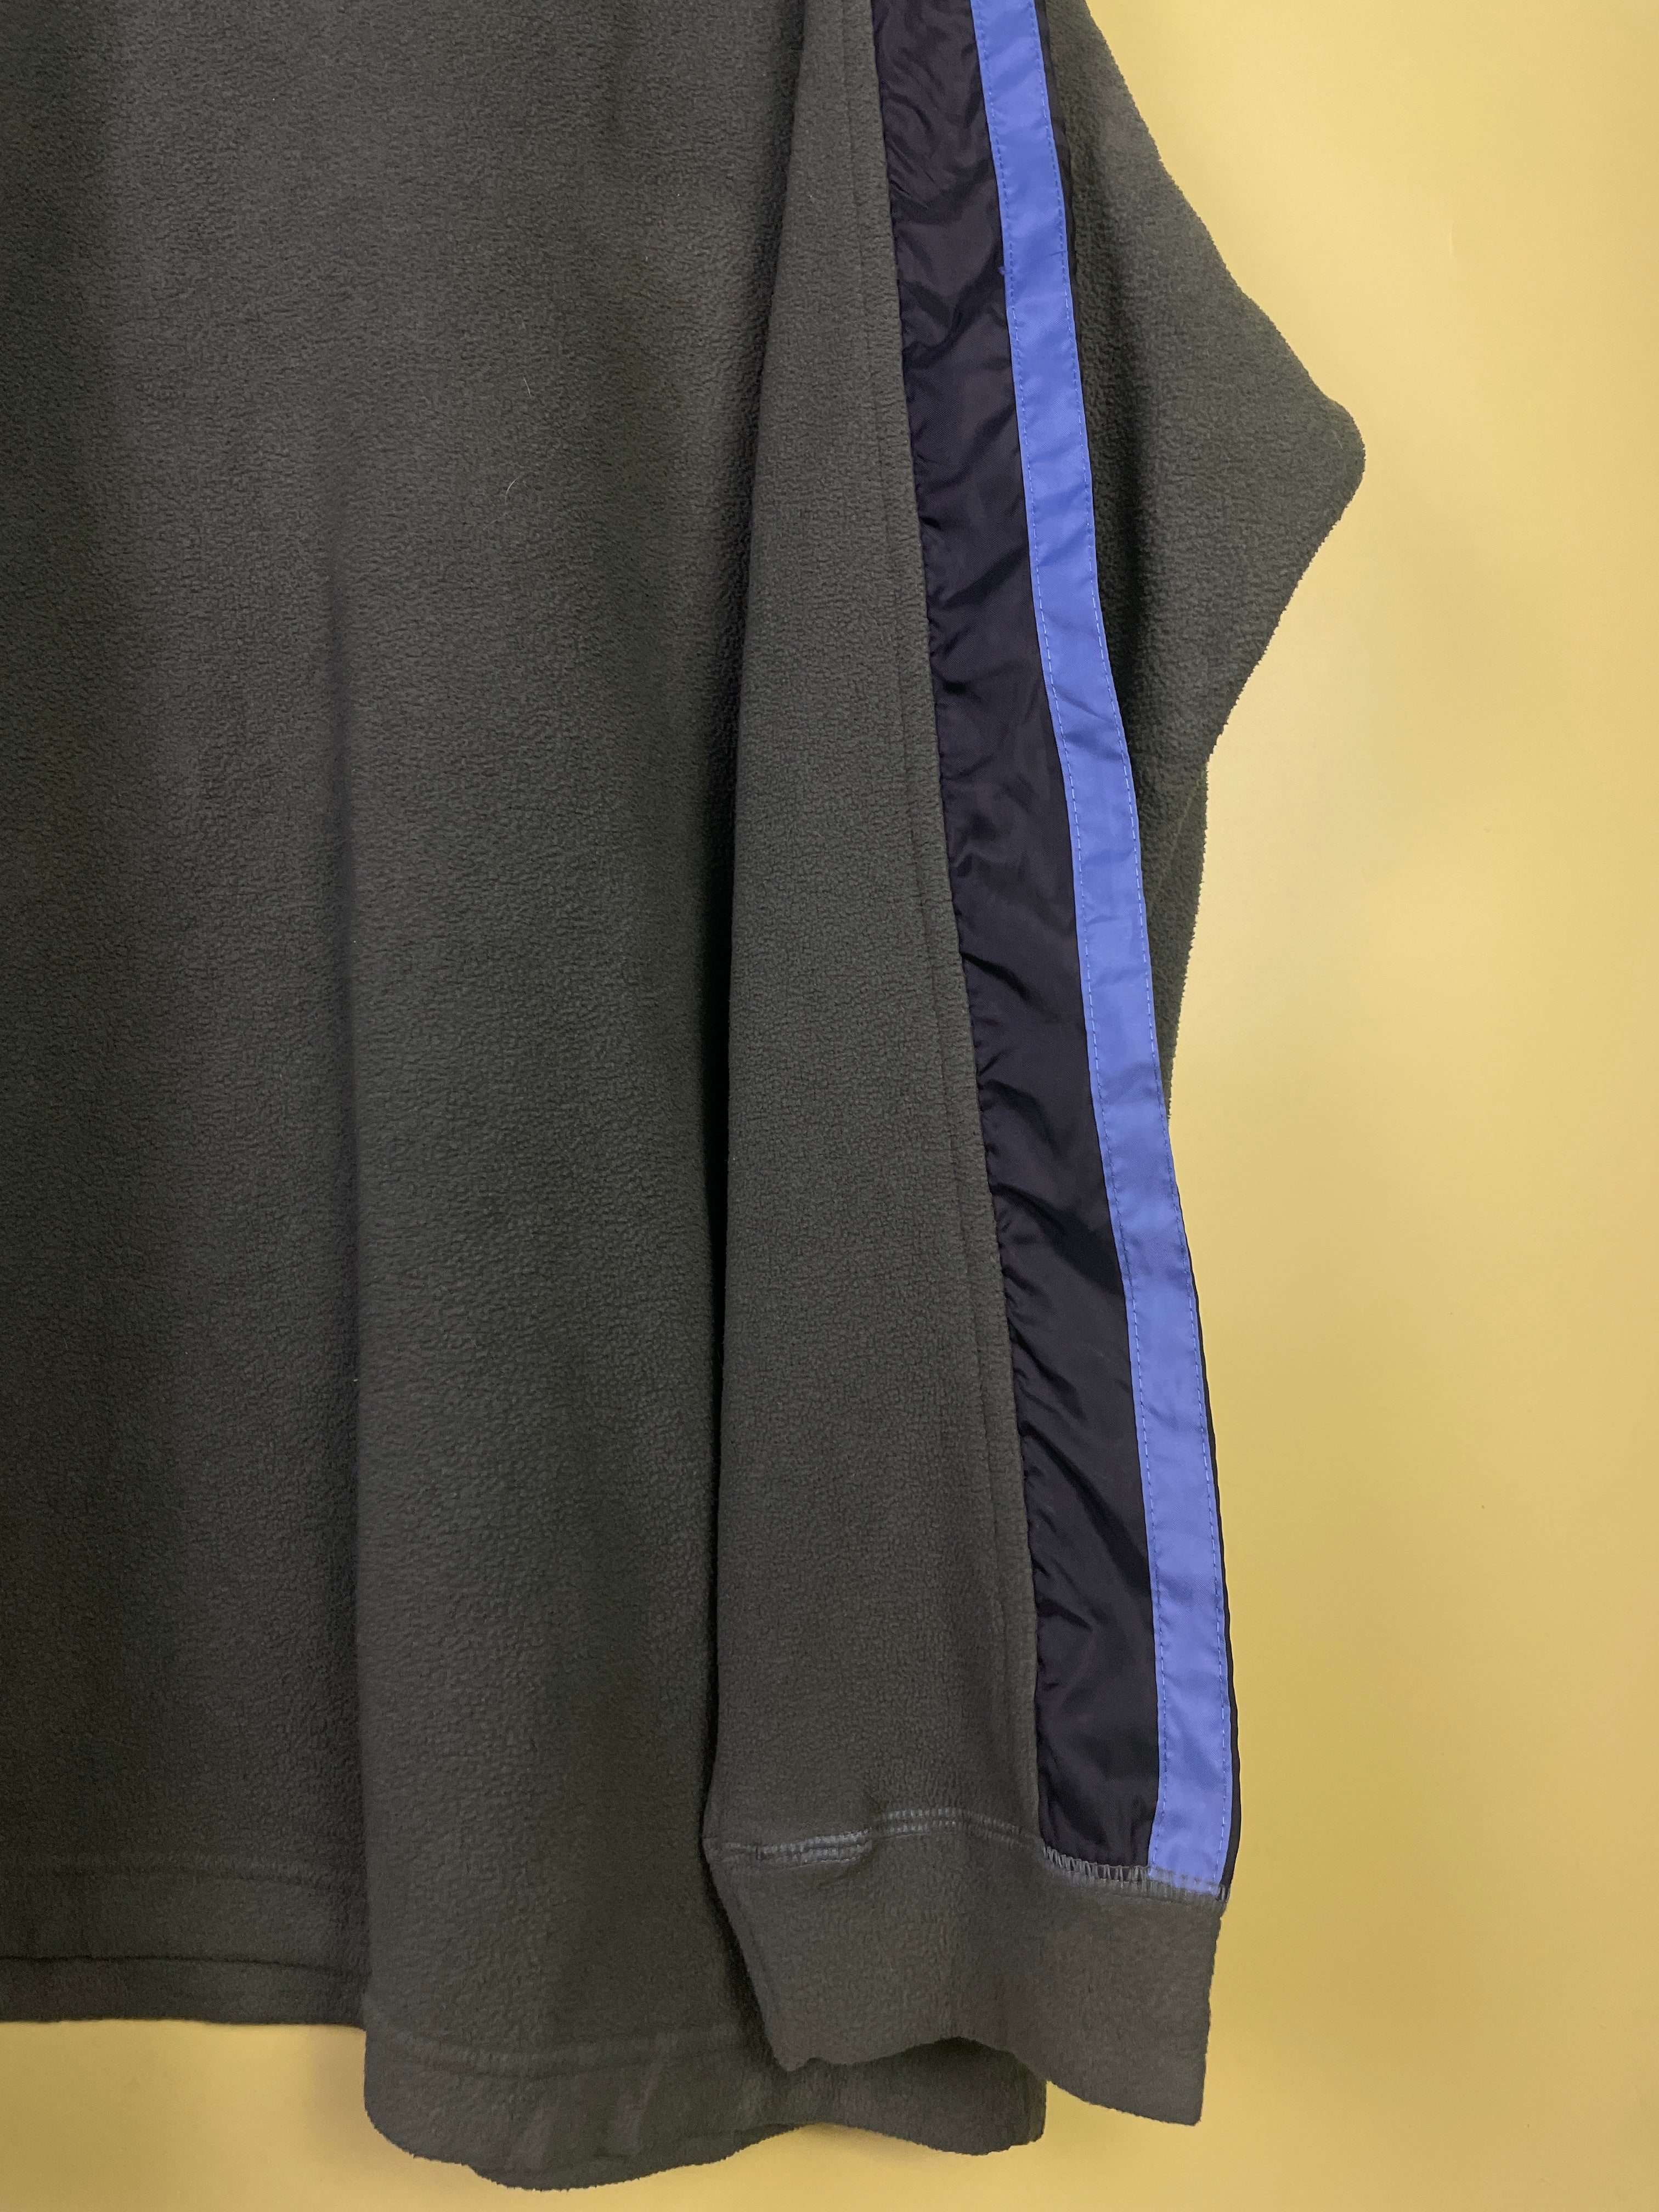 XL Fleece Nike Sweater dunkelgrün